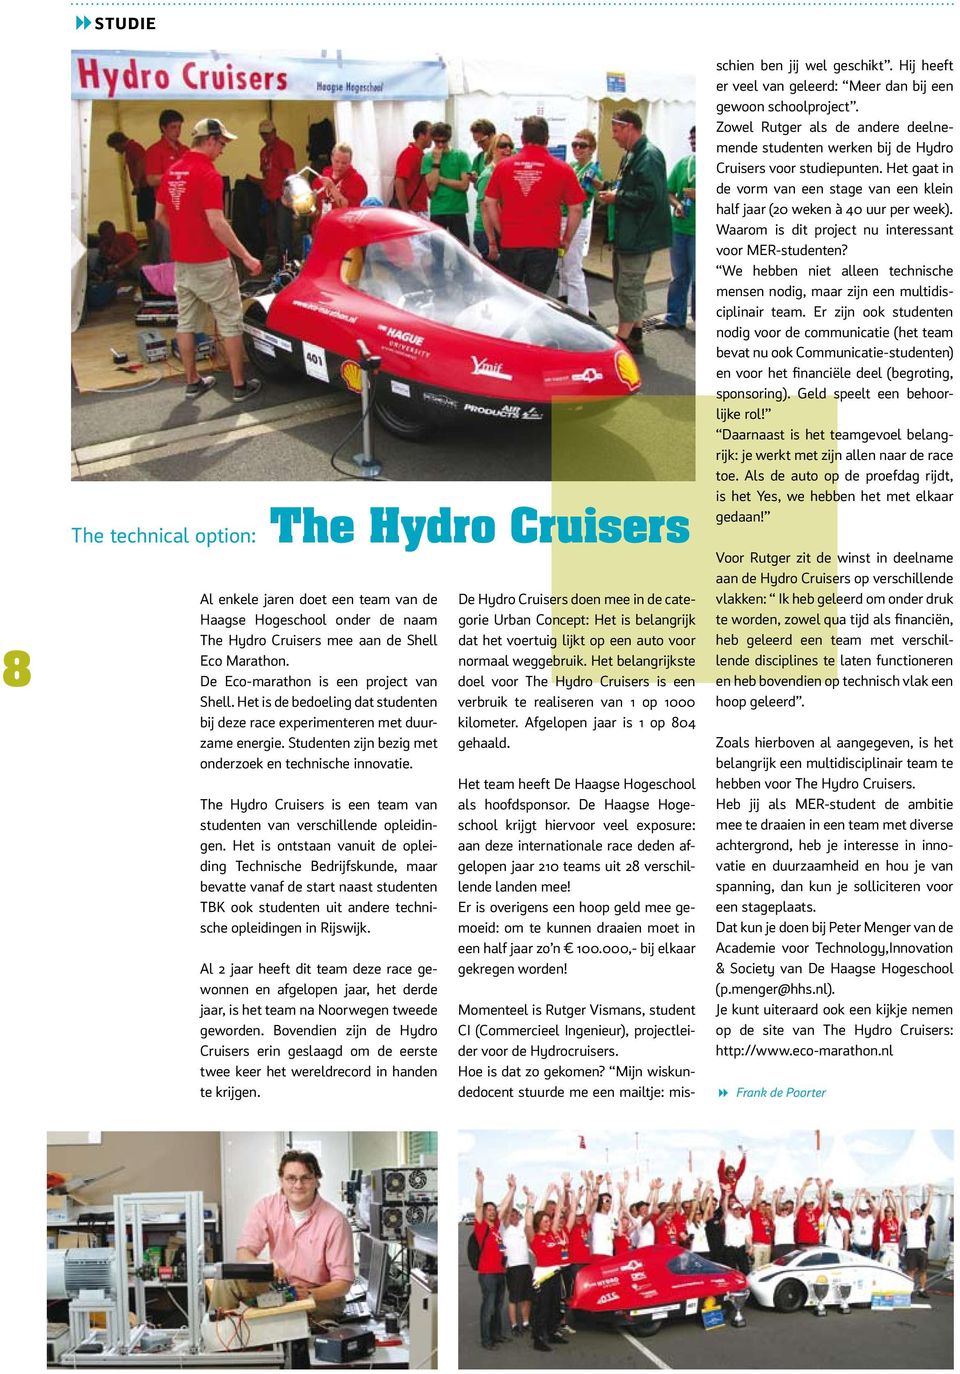 The Hydro Cruisers is een team van studenten van verschillende opleidingen.